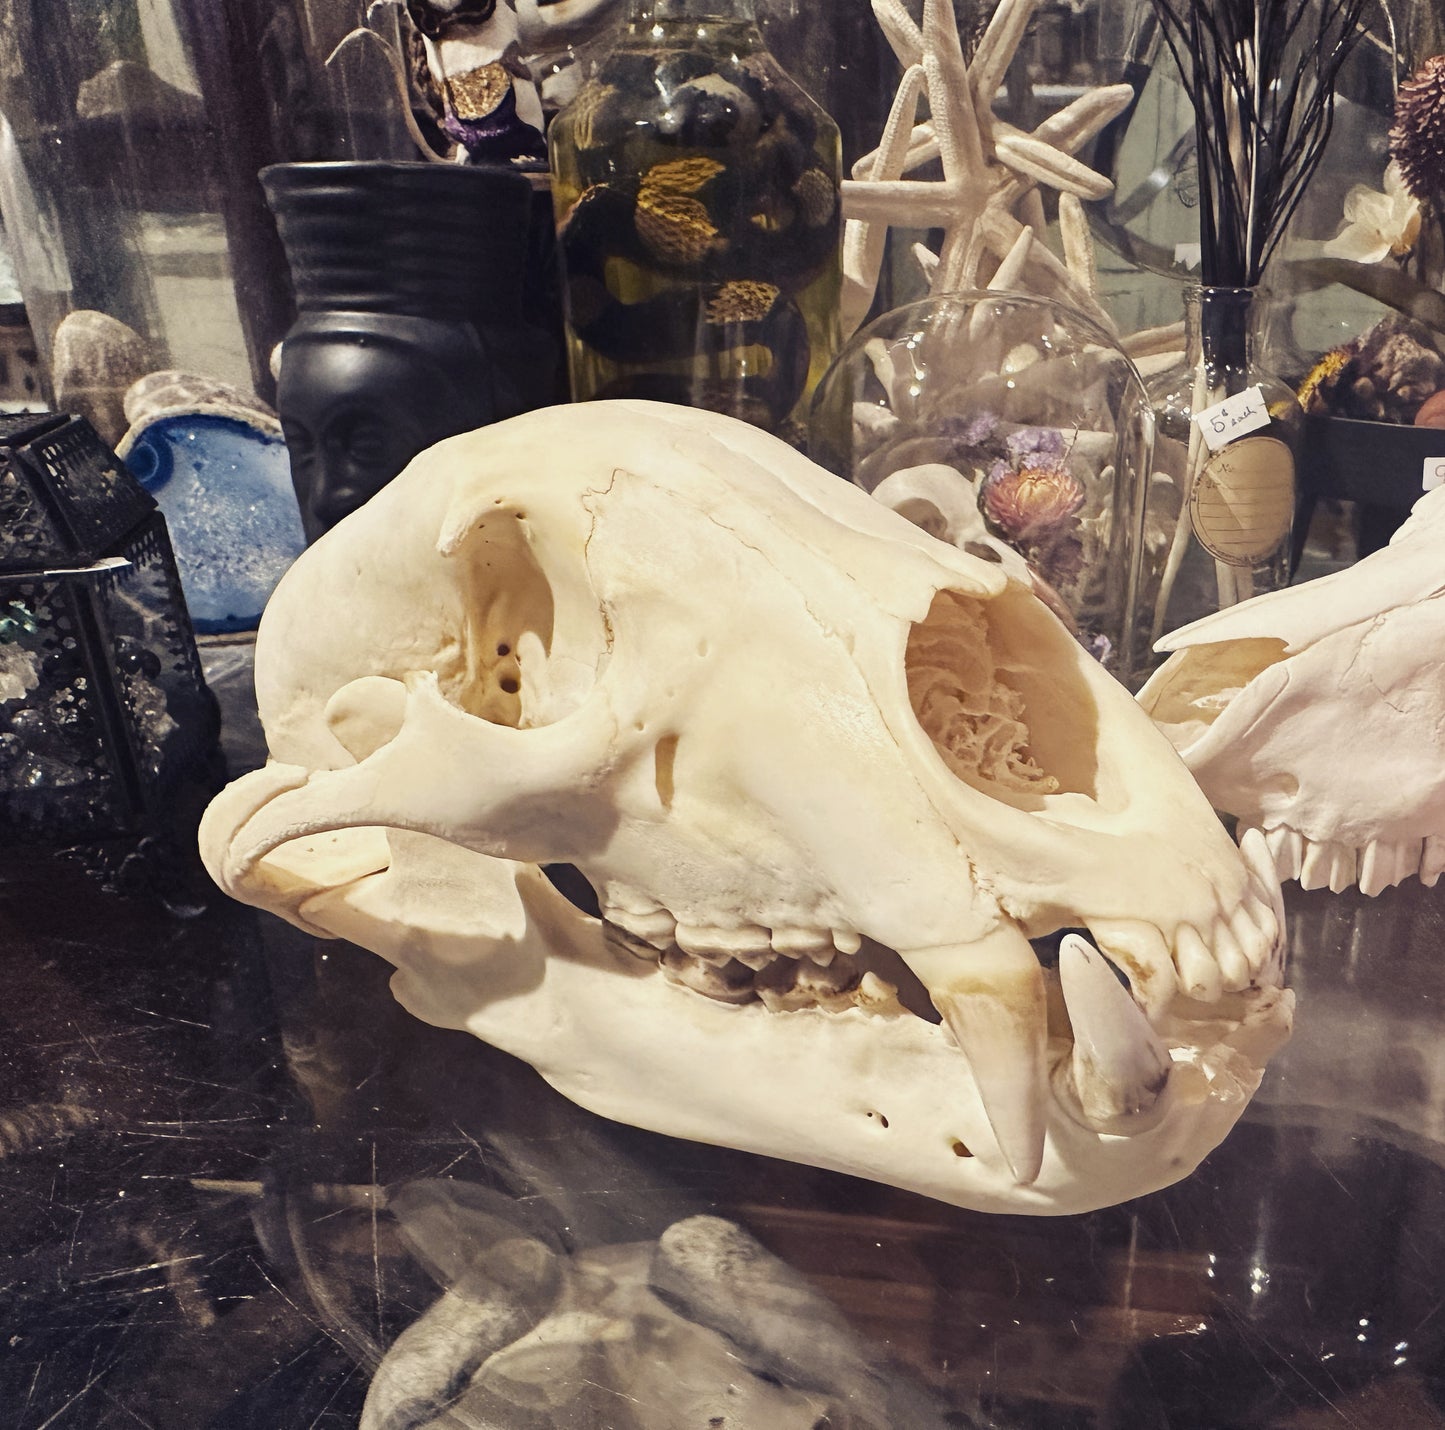 Black bear skull complete